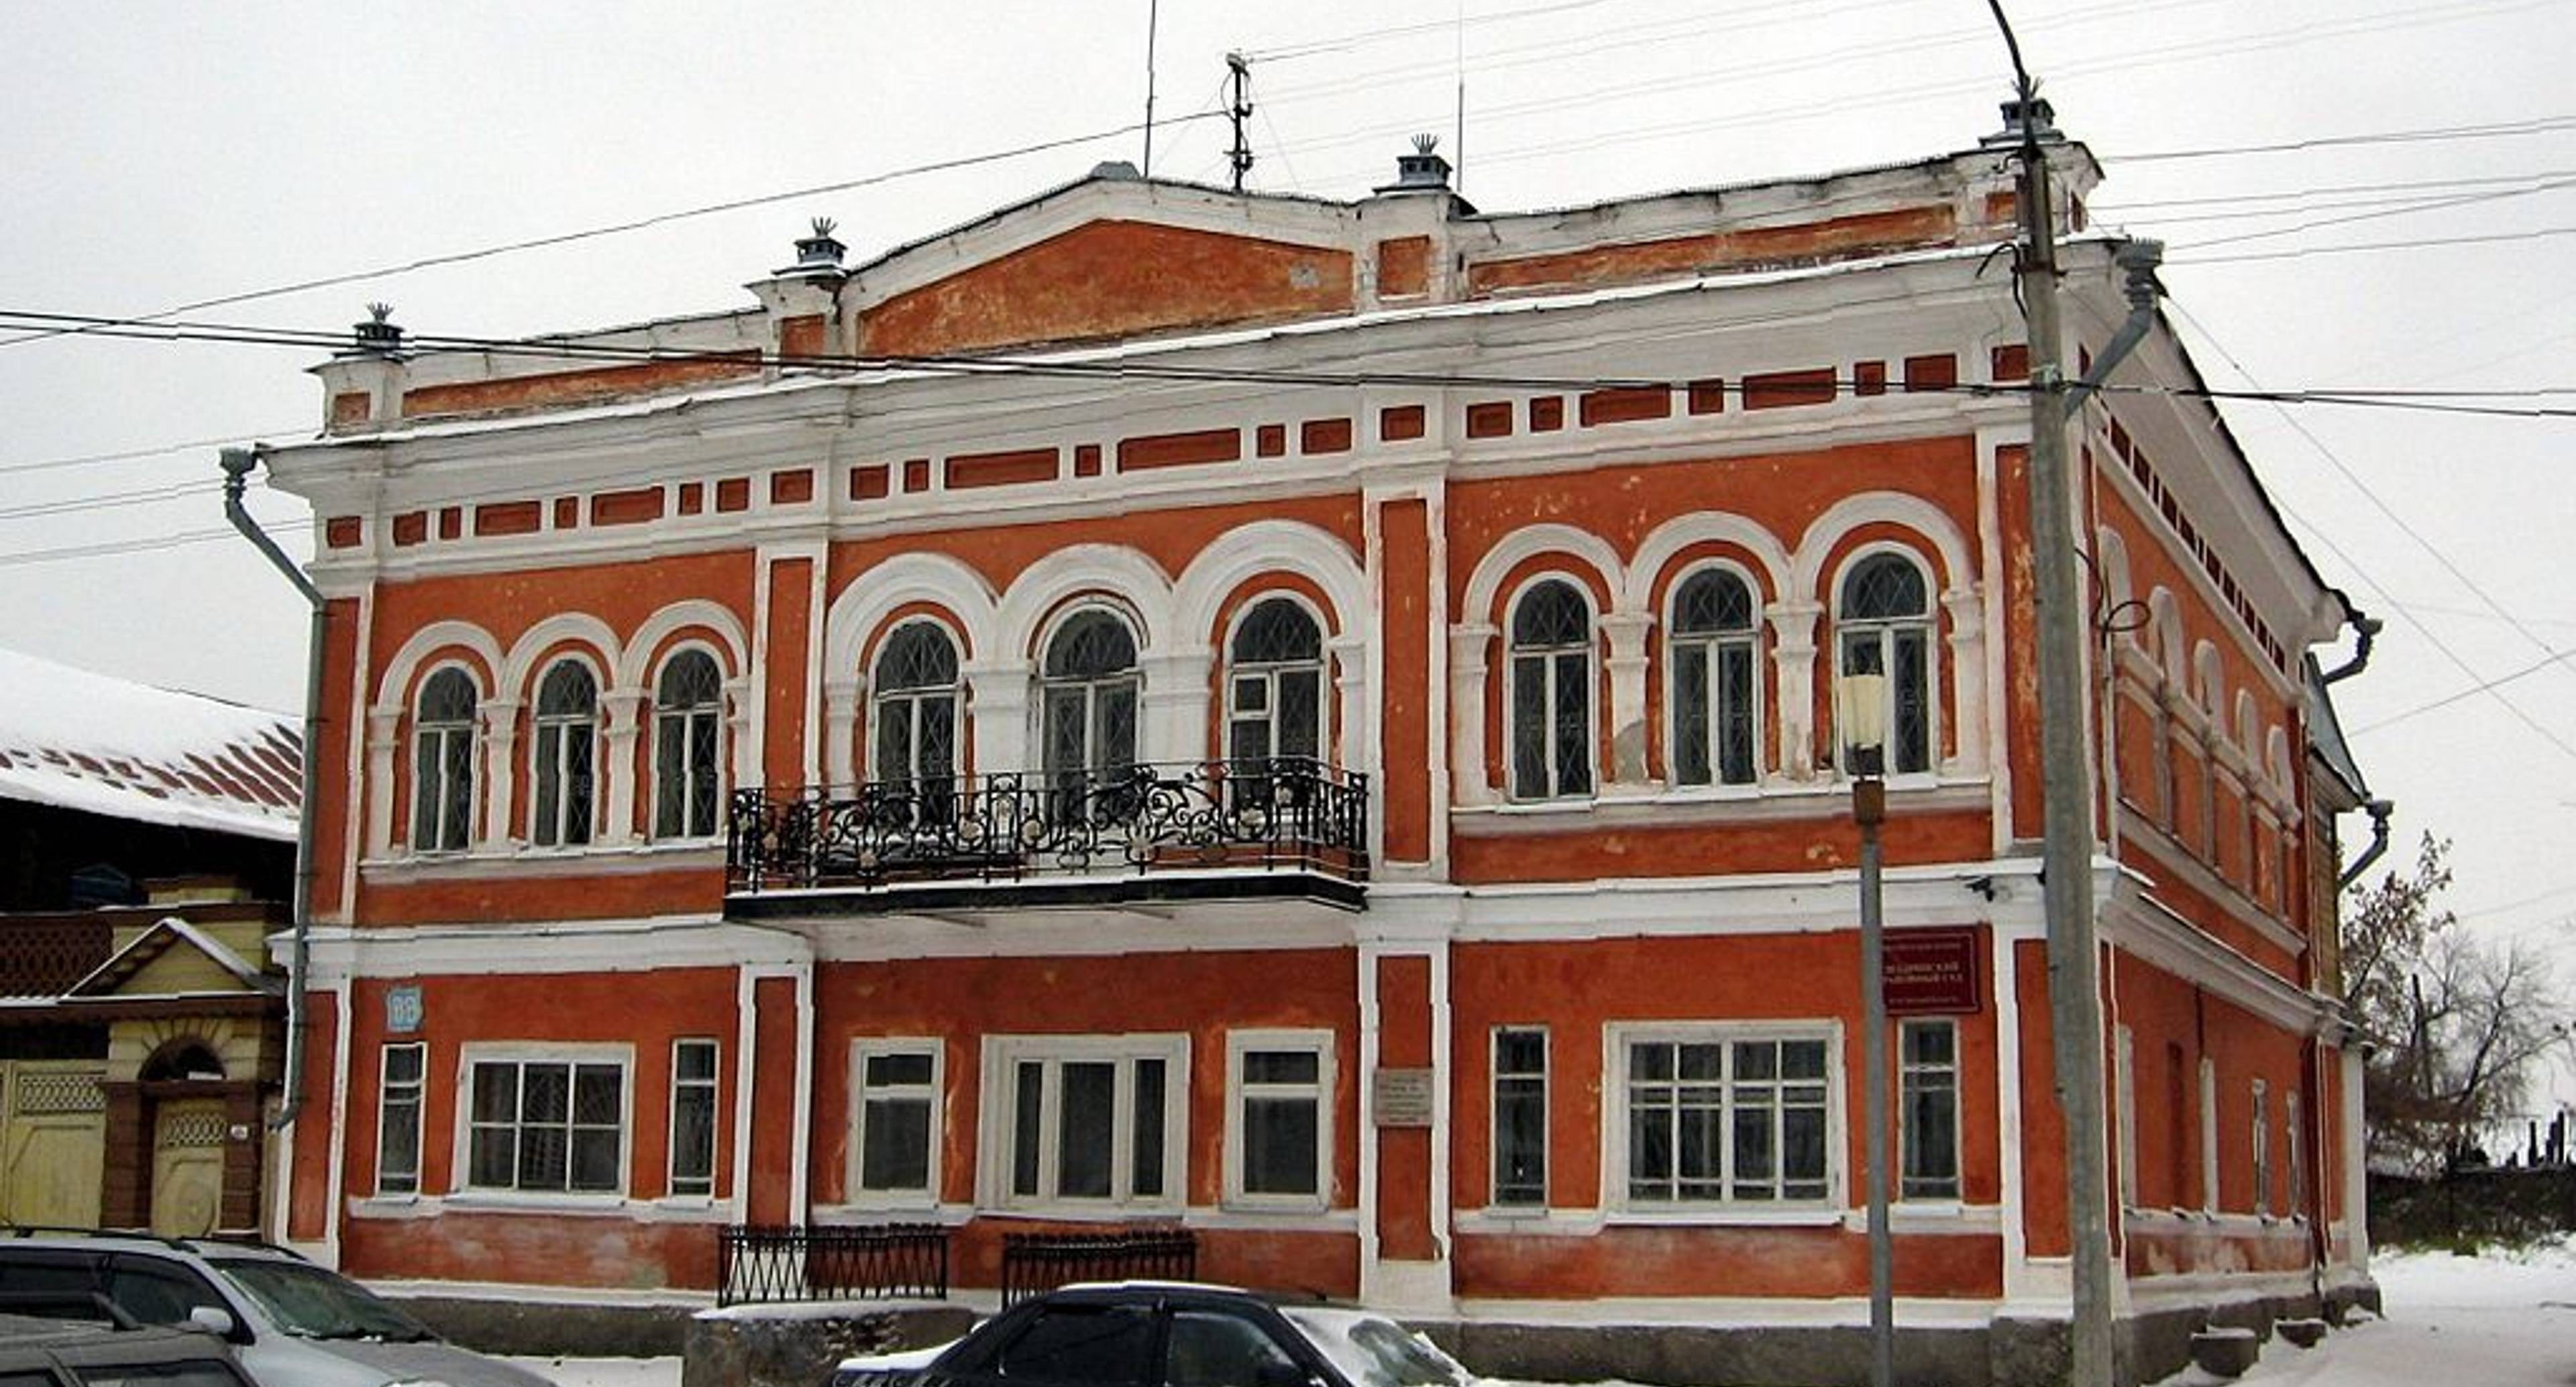 Kamensk-Uralsky, Kataysk, Dalmatovo, Shadrinsk